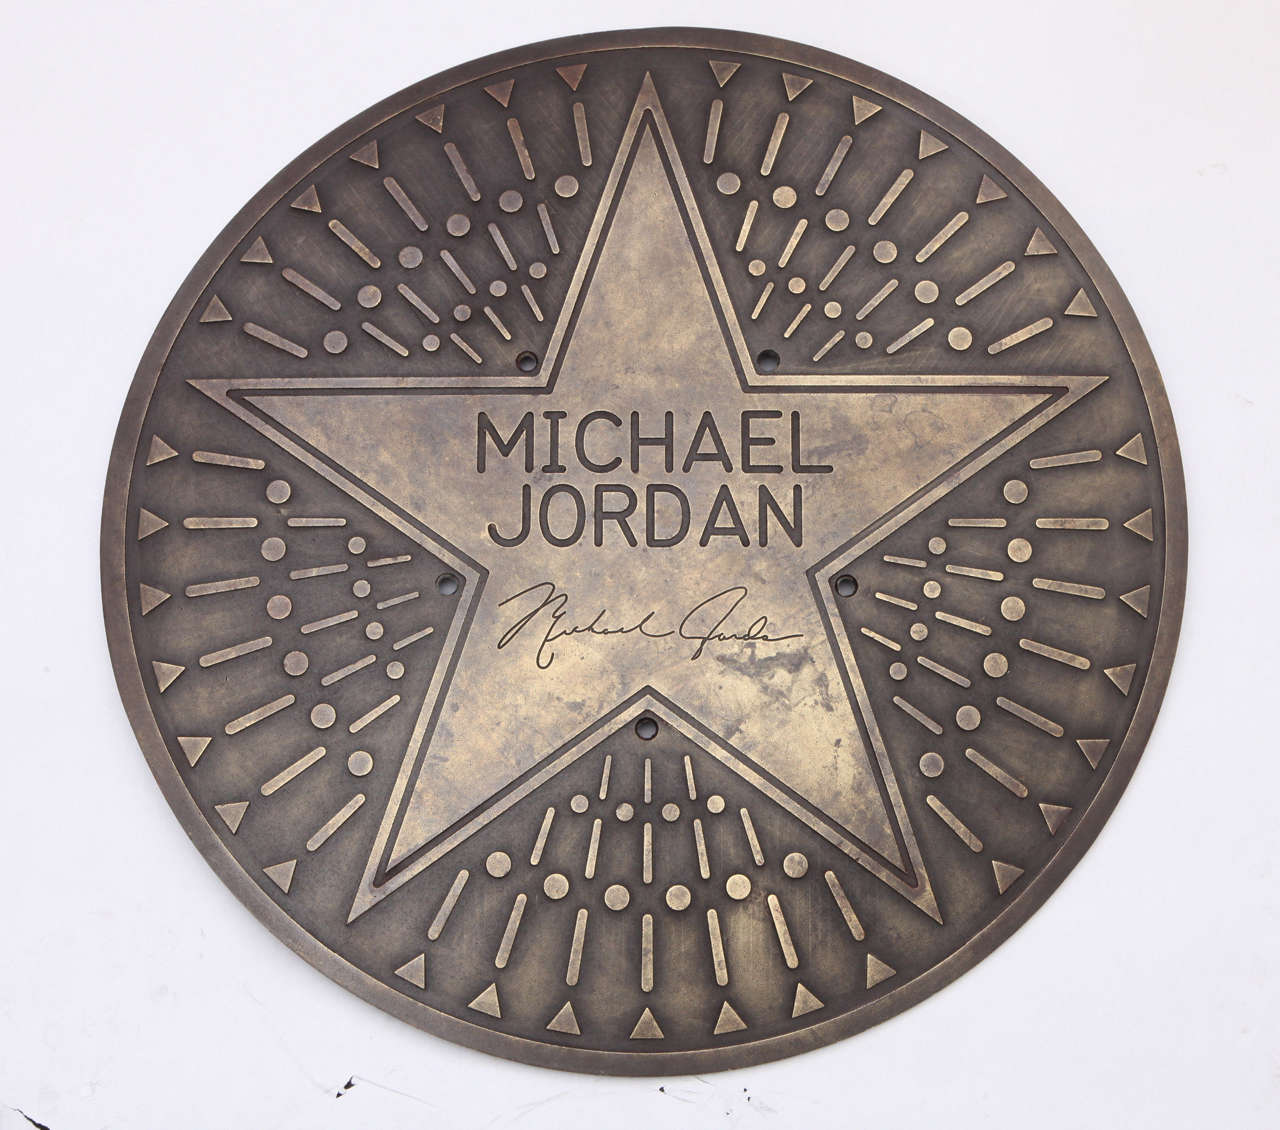 A 1980s Michael Jordan bronze architectural plaque.